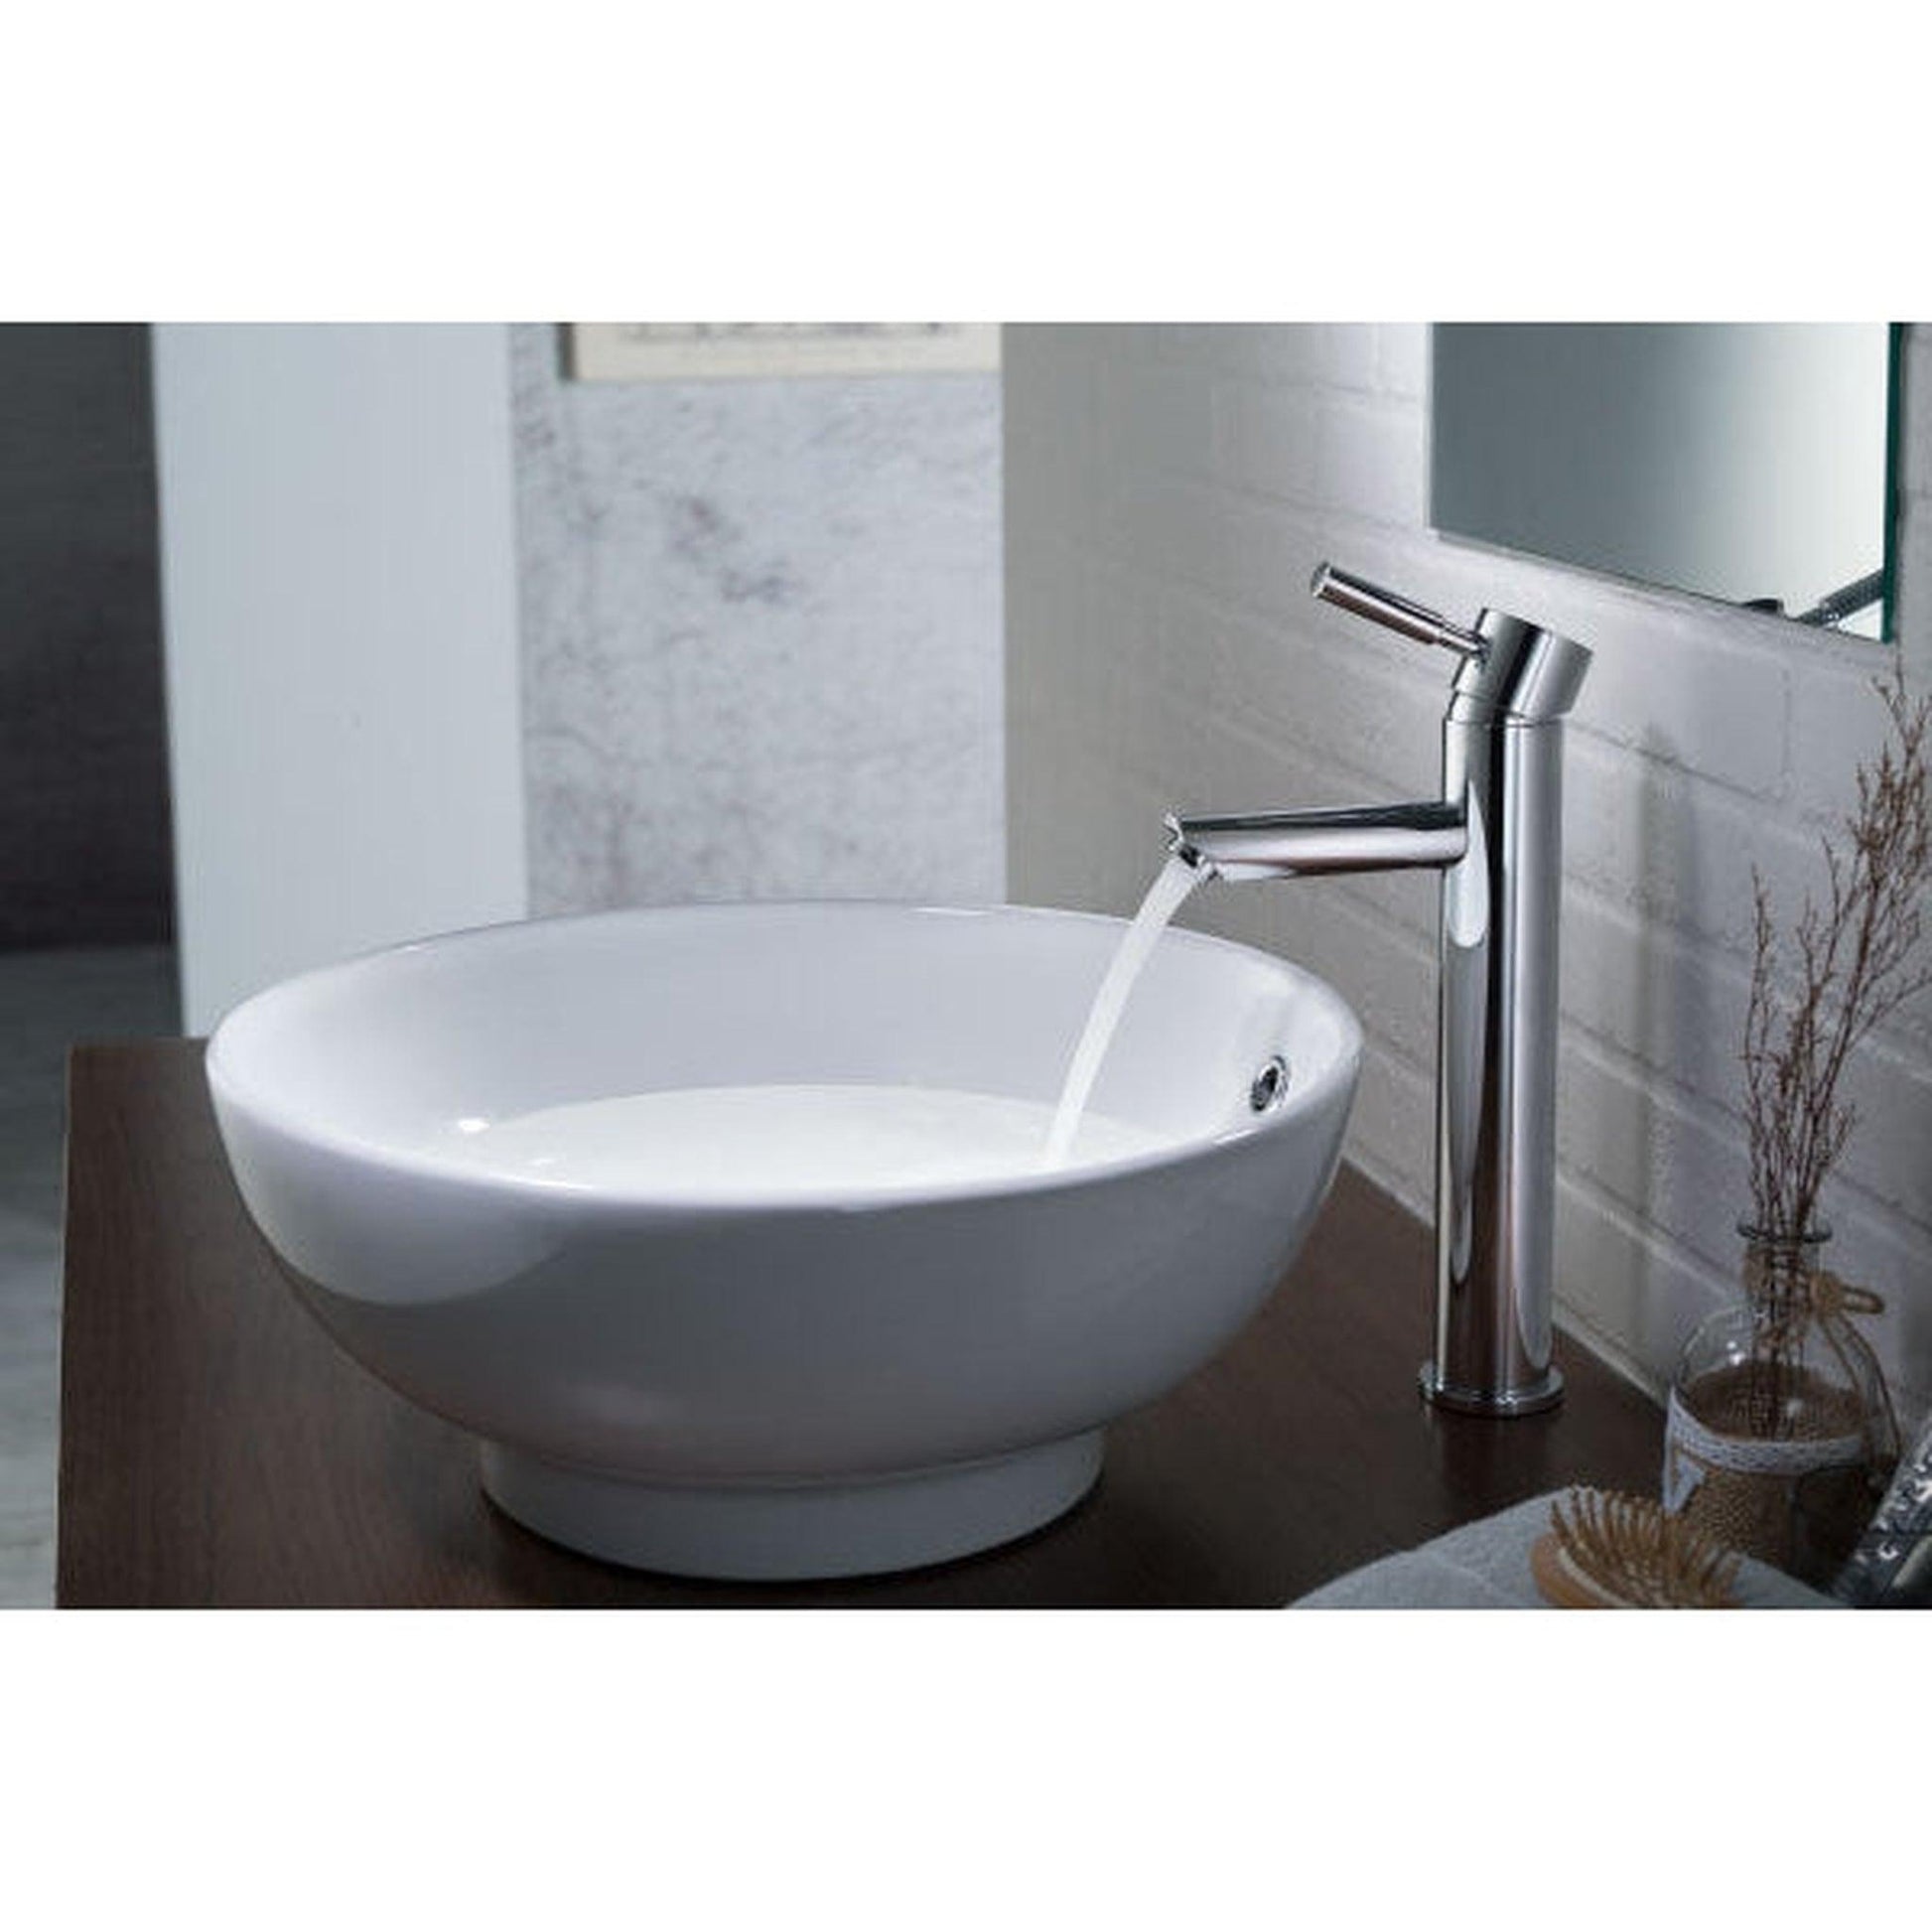 Isenberg Serie 100 12" Single-Hole Brushed Nickel PVD Deck-Mounted Vessel Bathroom Sink Faucet